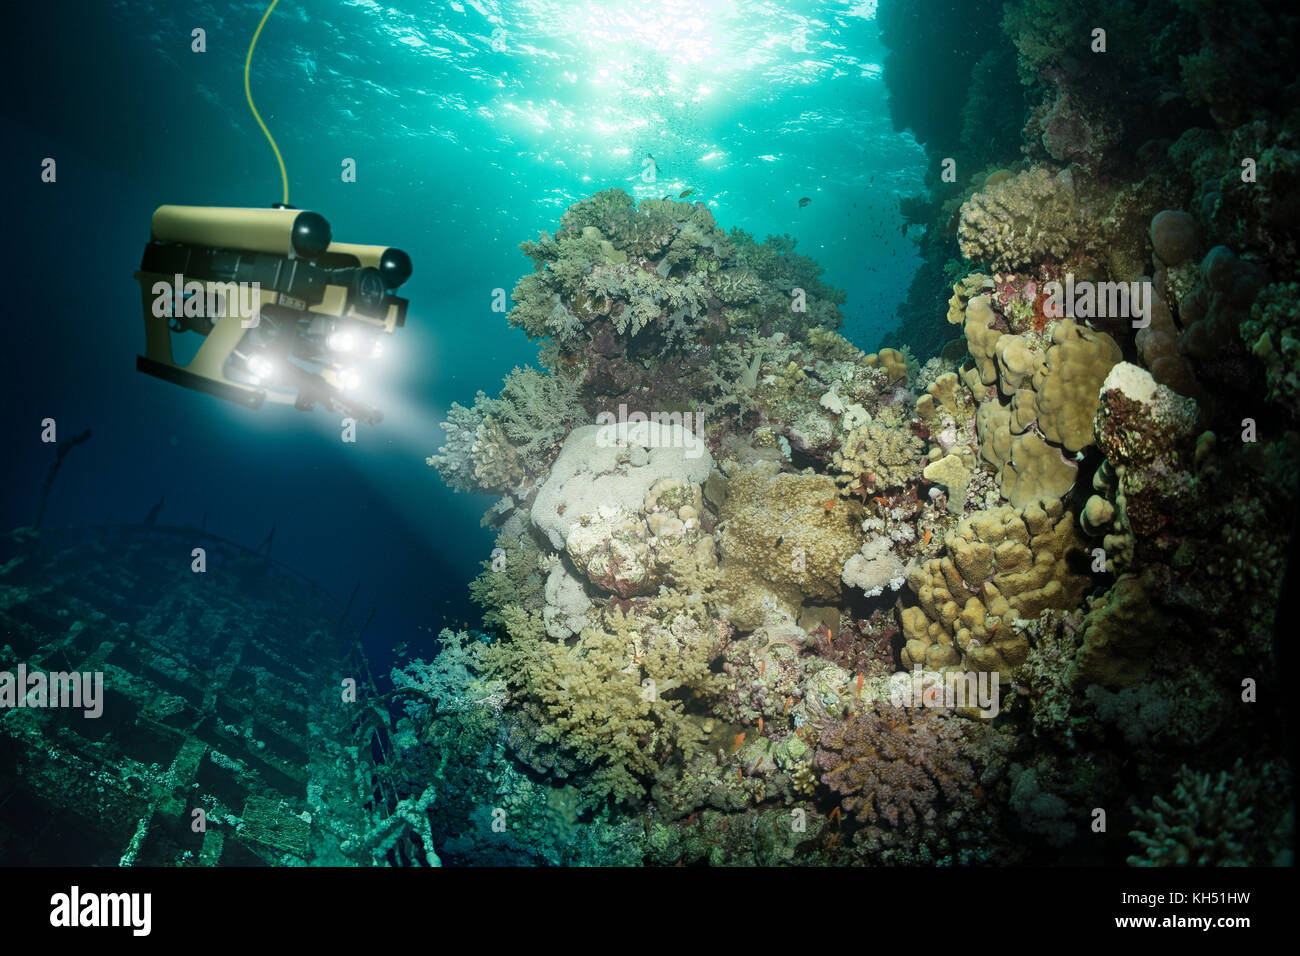 Robot inspects a sunken ship deep under water Stock Photo